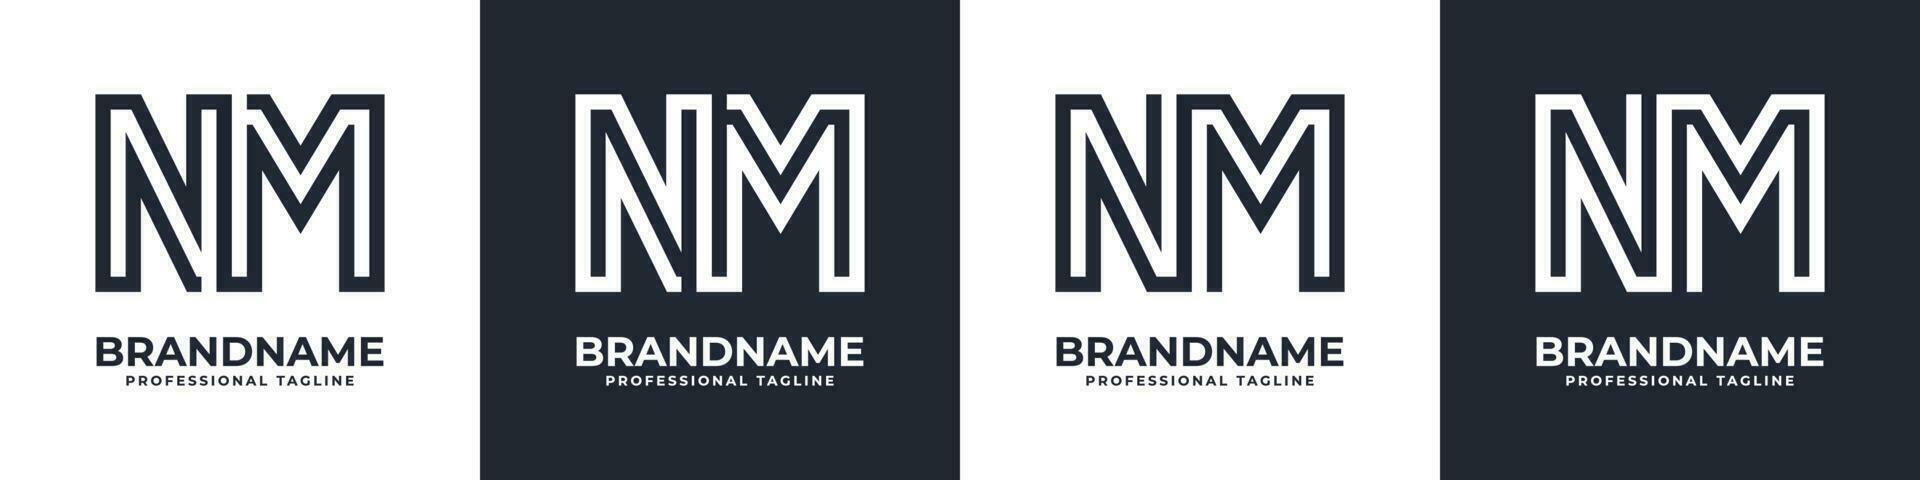 simples nm monograma logotipo, adequado para qualquer o negócio com nm ou mn inicial. vetor